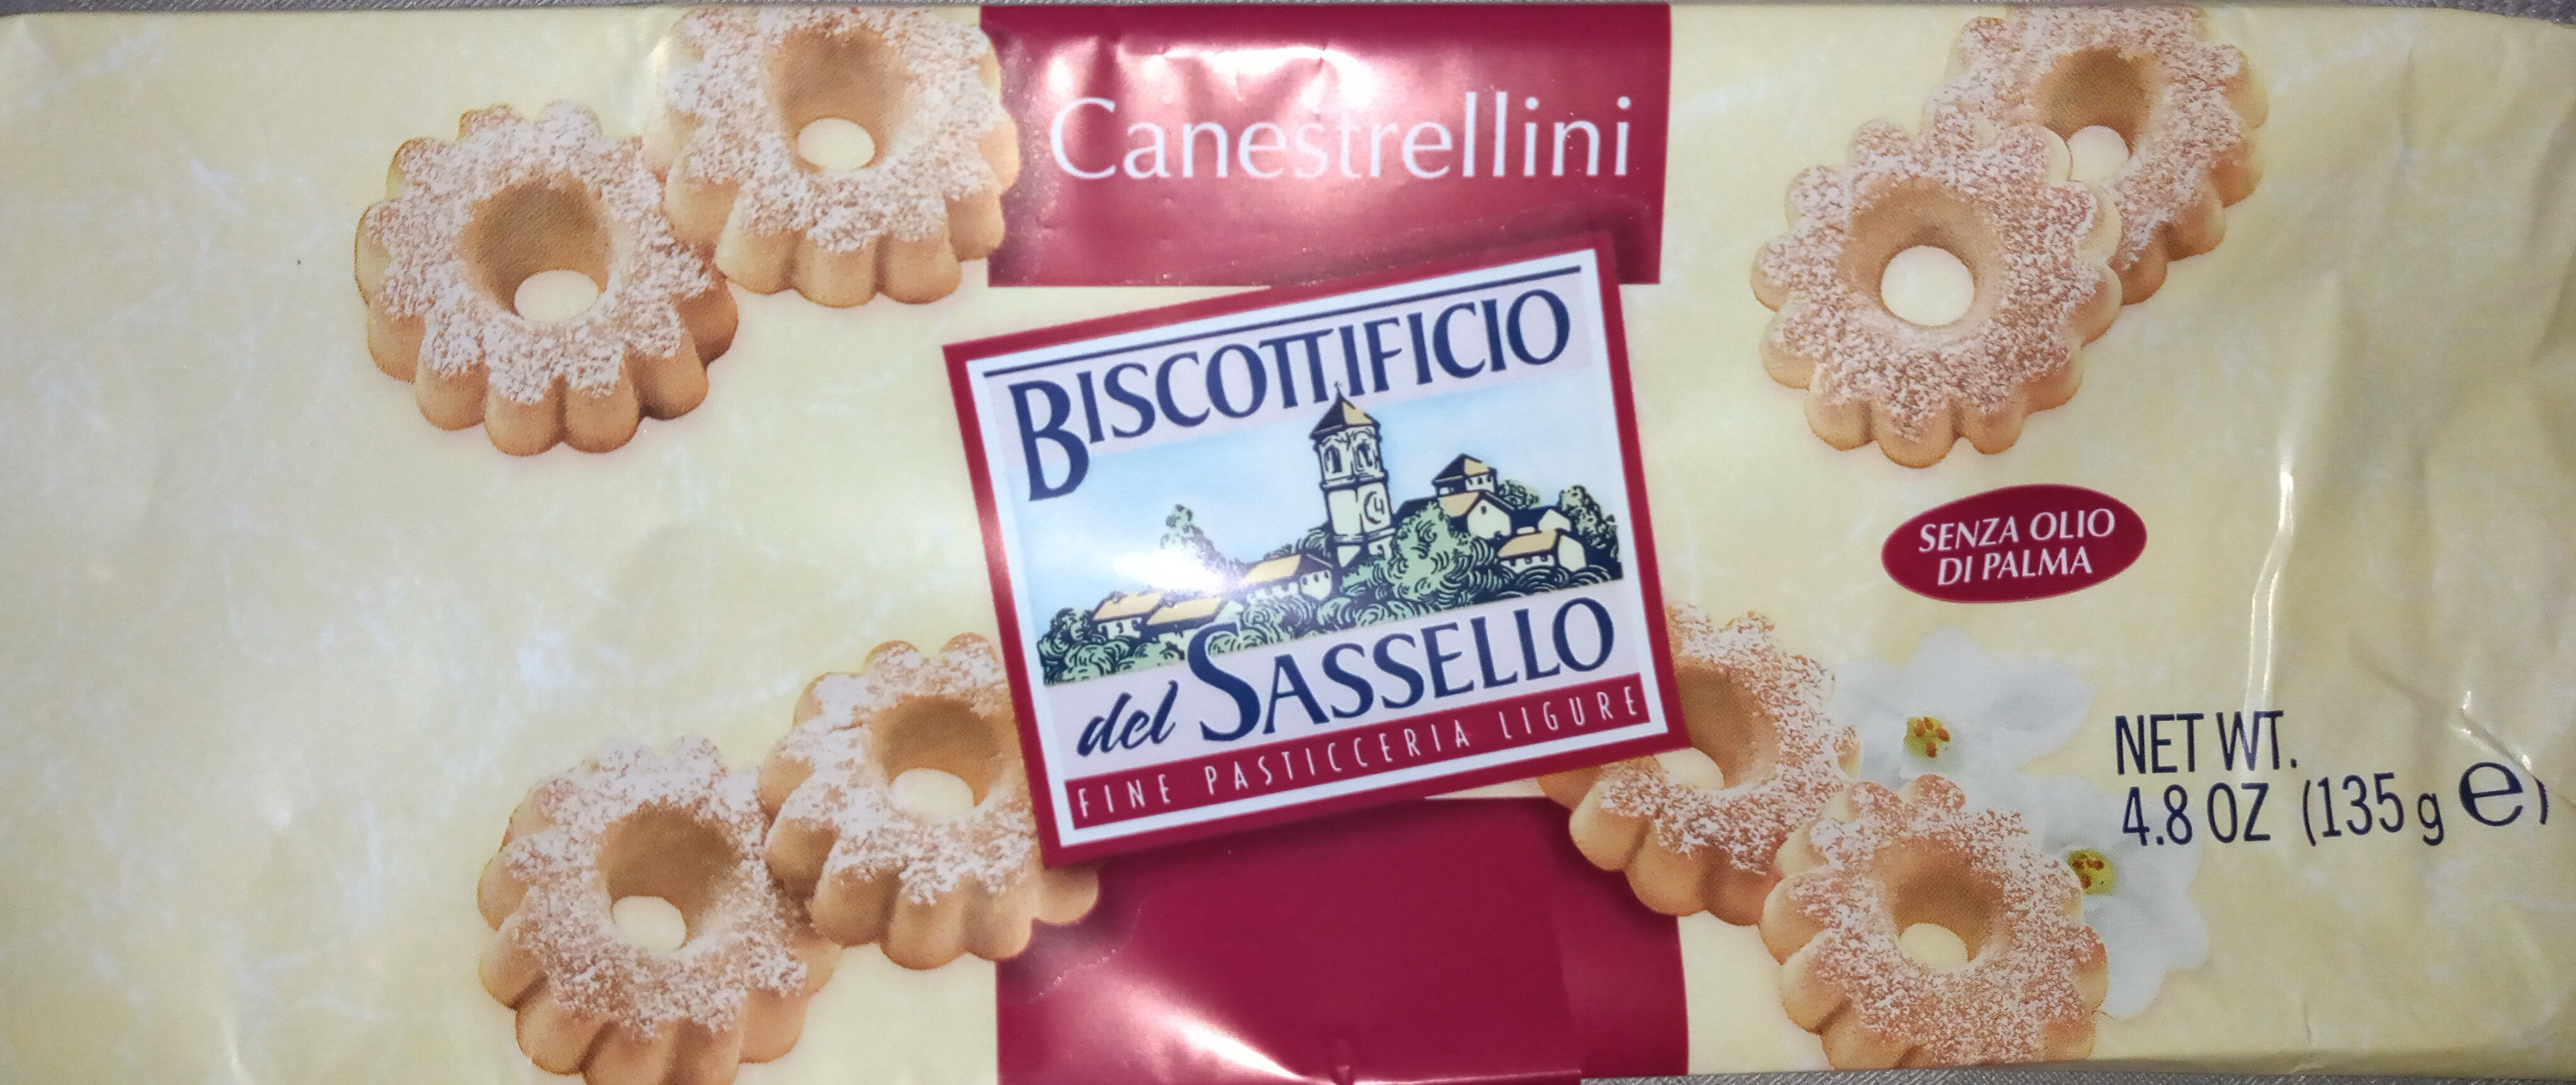 Canestrellini del sassello - Producte - it